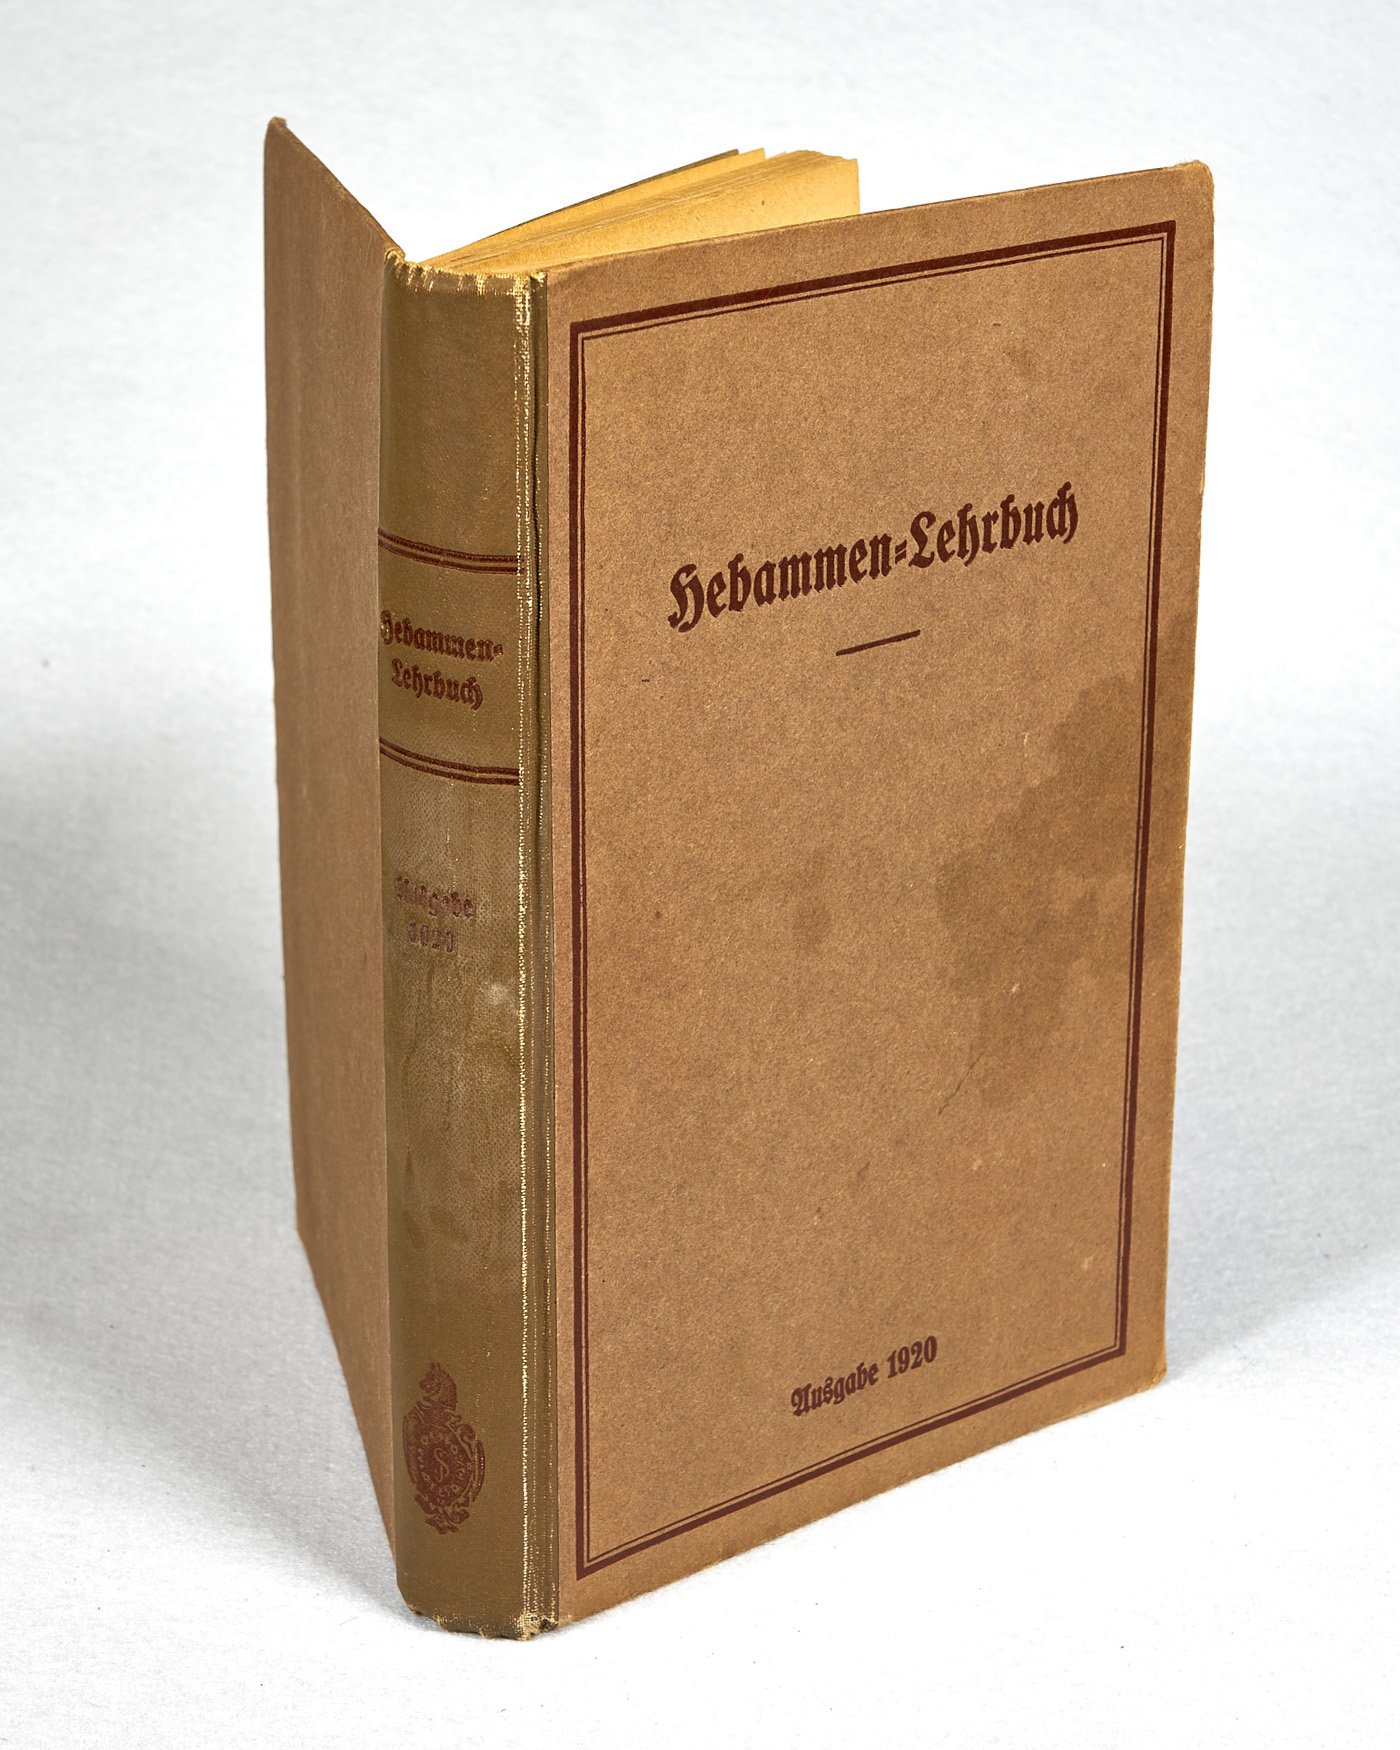 Hebammen-Lehrbuch, Ausgabe 1920, Hrsg. im Auftrage des preußischen Ministers für Volkswohlfahrt (Wilhelm-Fabry-Museum CC BY-NC-SA)